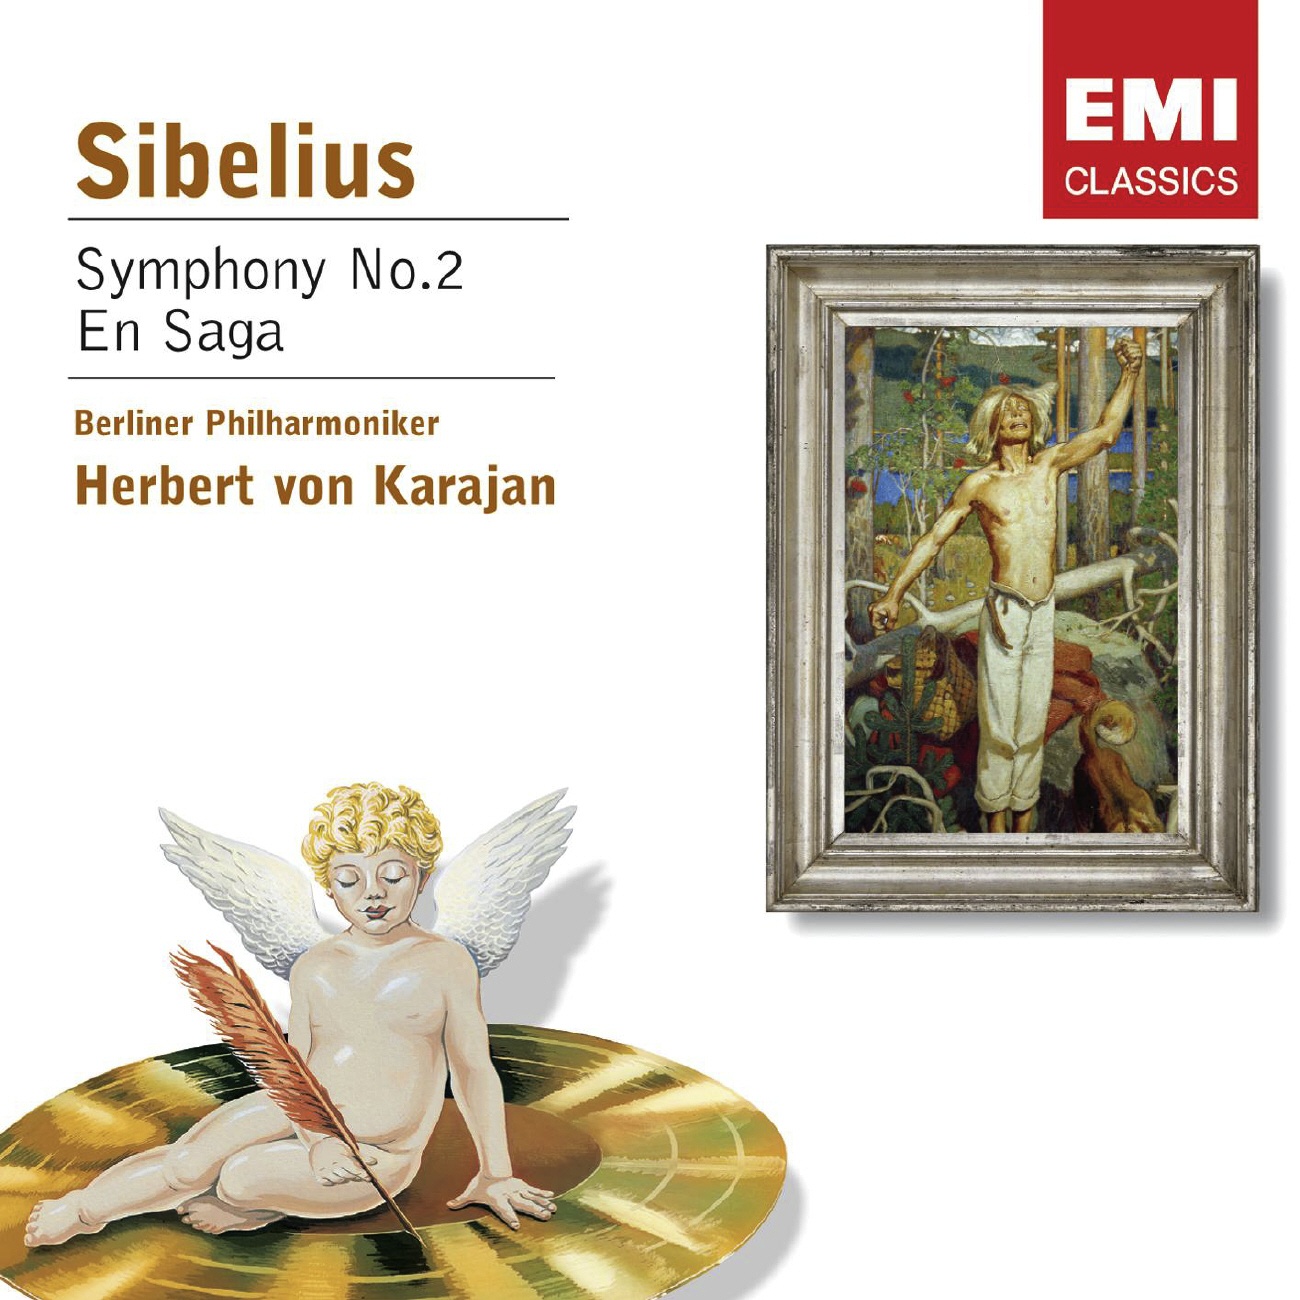 Sibelius: Symphony No.2 in D, Op.43